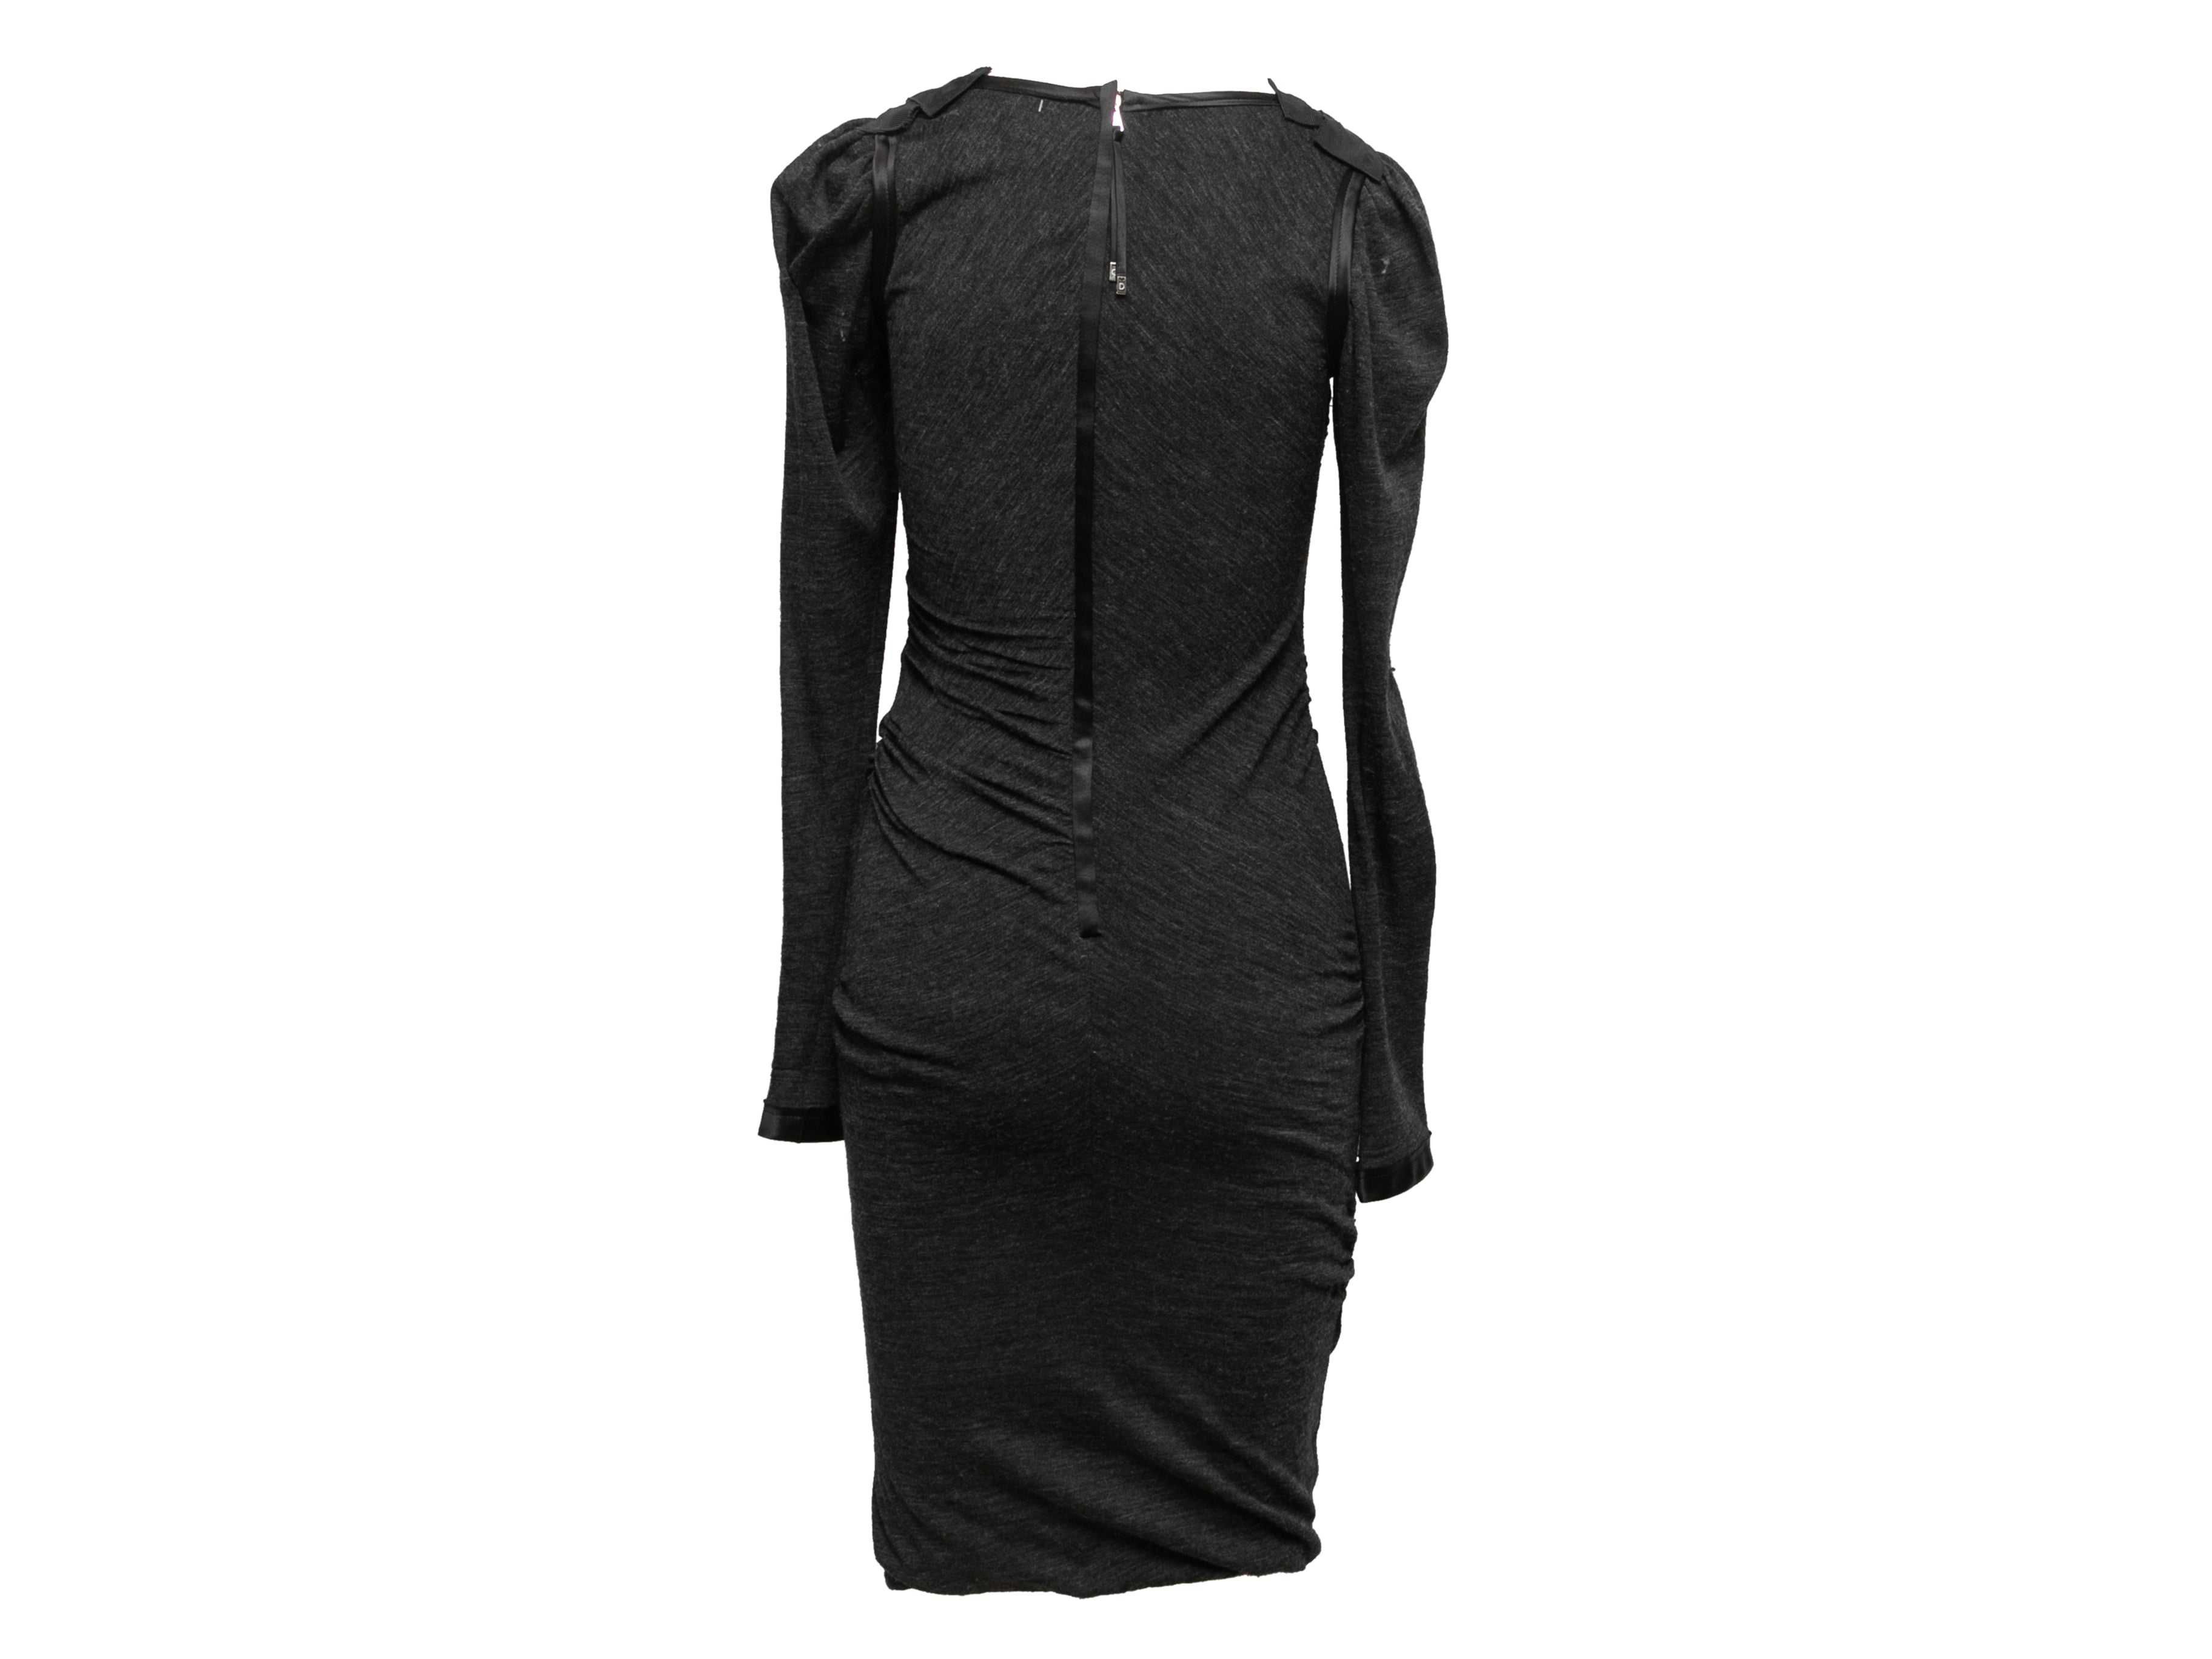 LV Louis Vuitton Long Sleeve Bodycon Dress  Long sleeve designer dresses,  Long sleeve bodycon dress, Bodycon dress parties